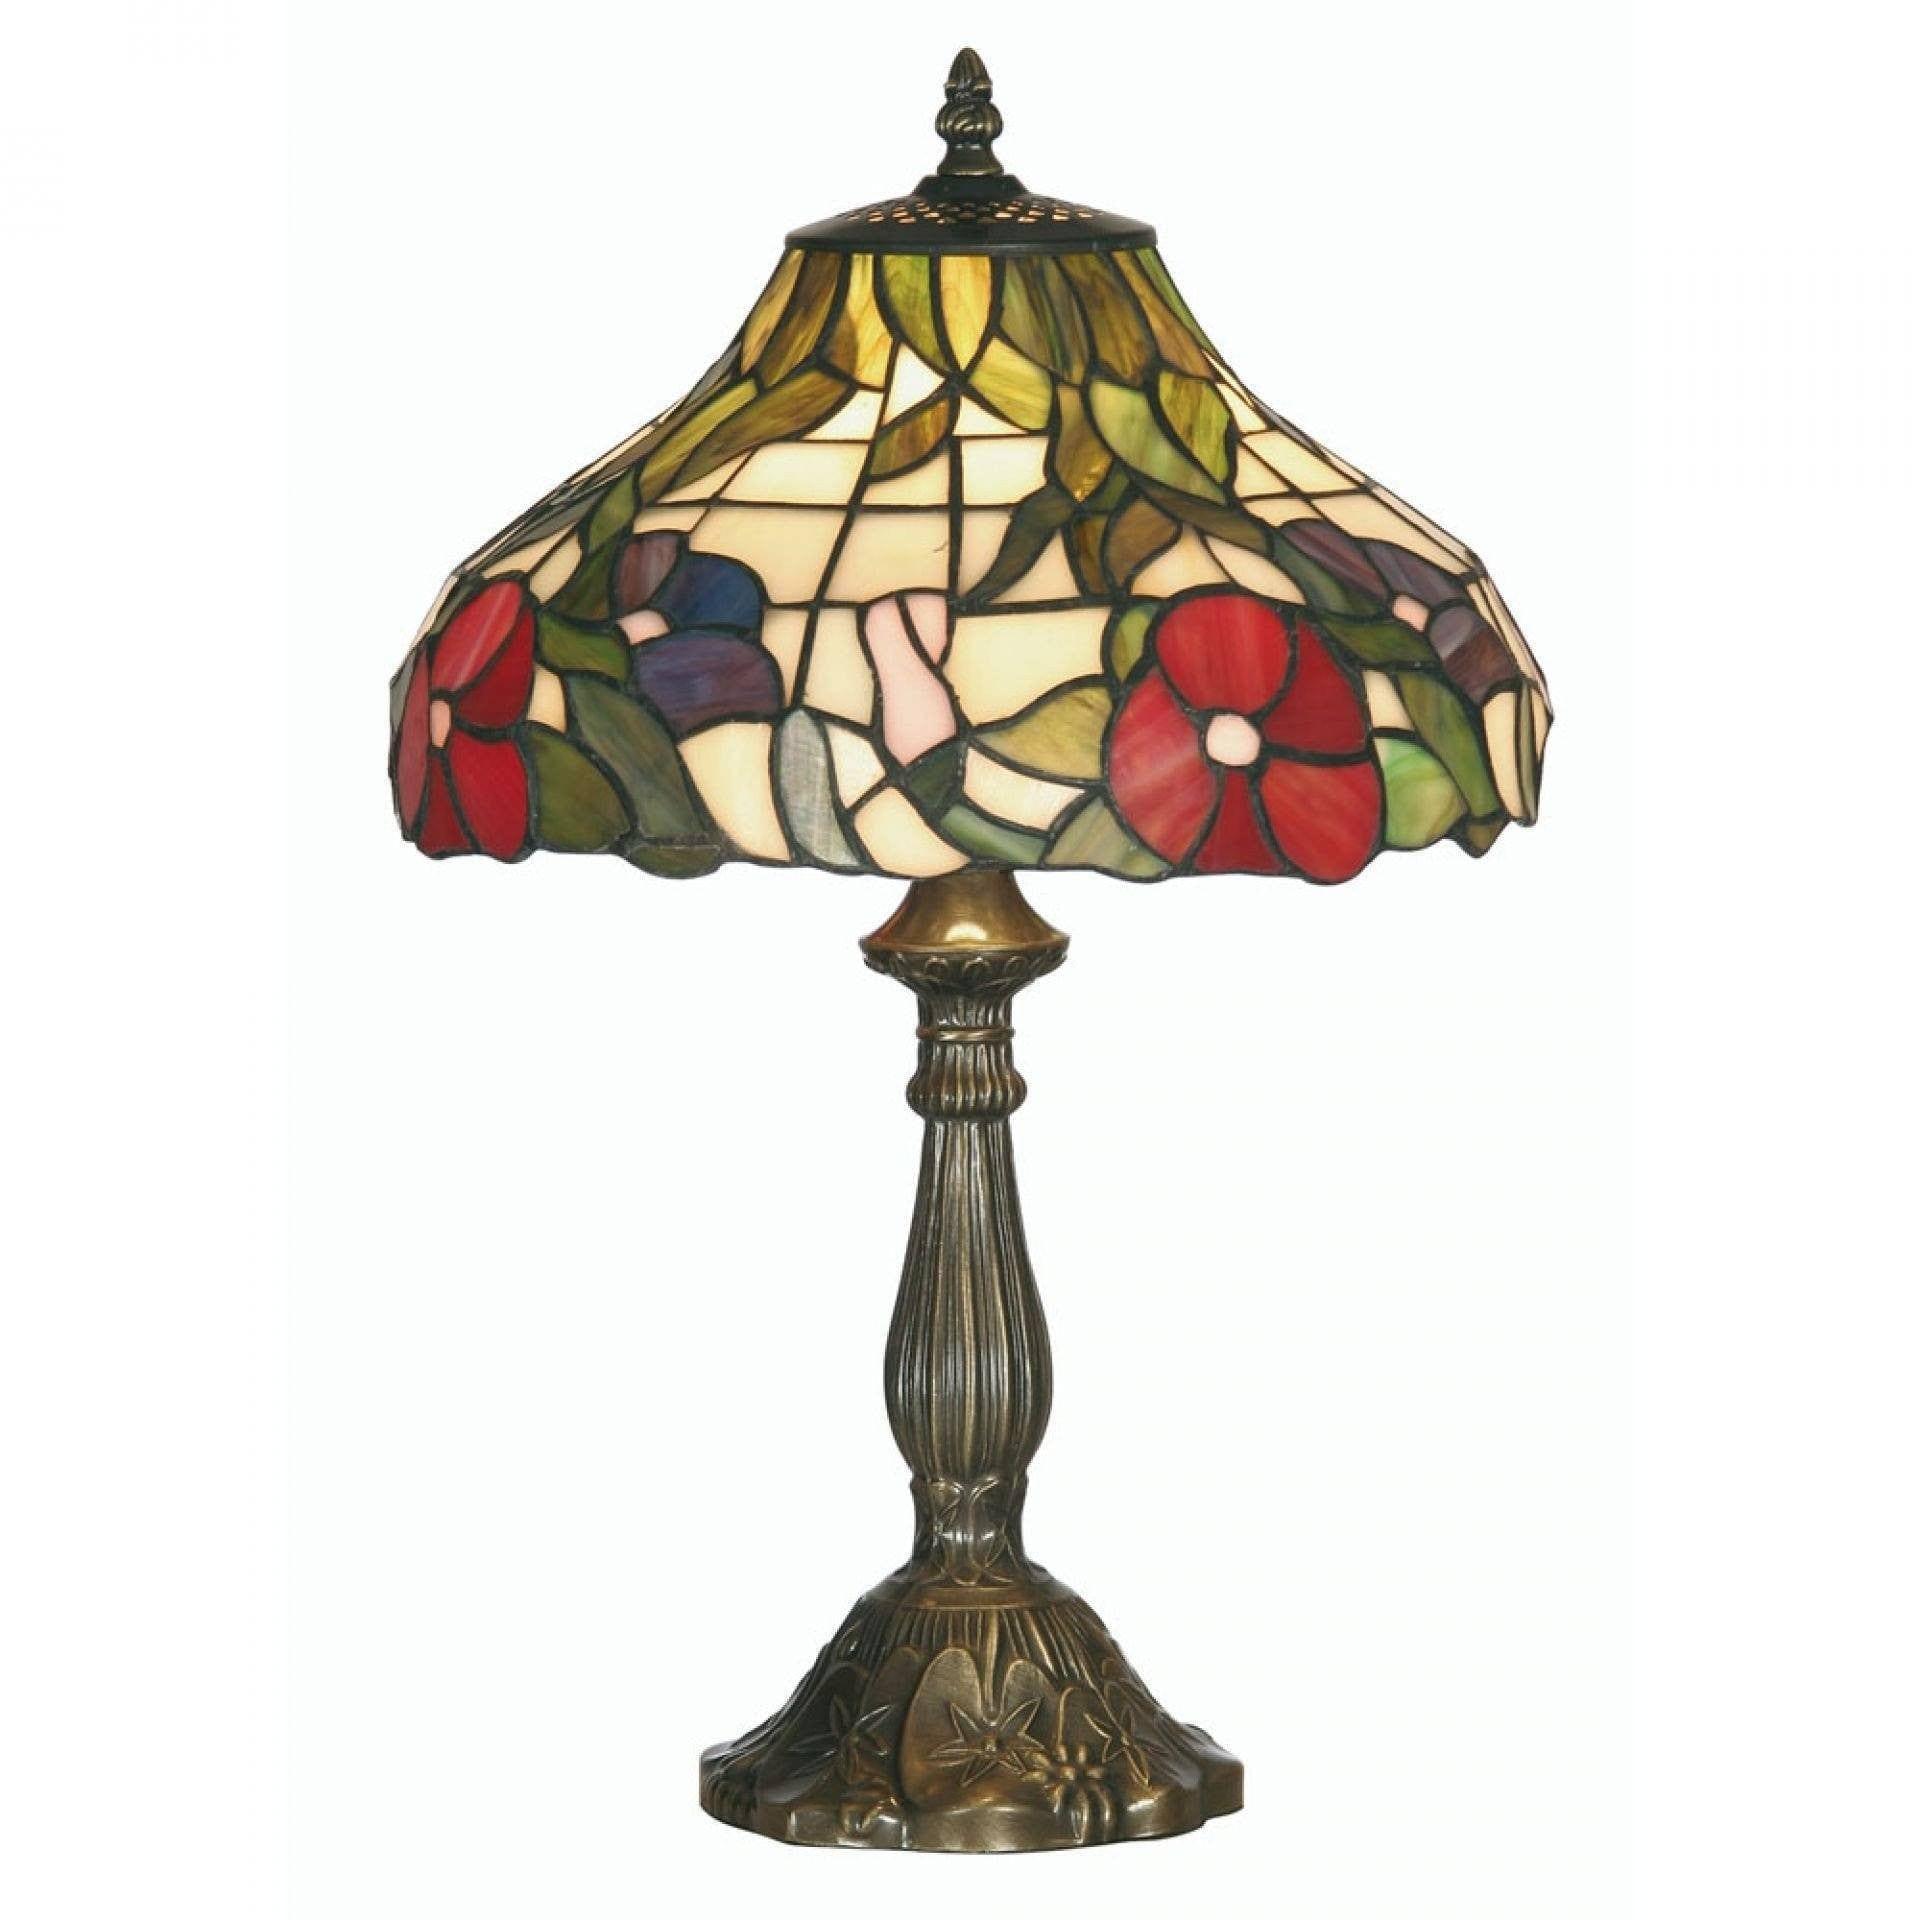 Regan cilia Kollega Buy Oaks Lighting Peonies Tiffany Table Lamp - Tiffany Lighting